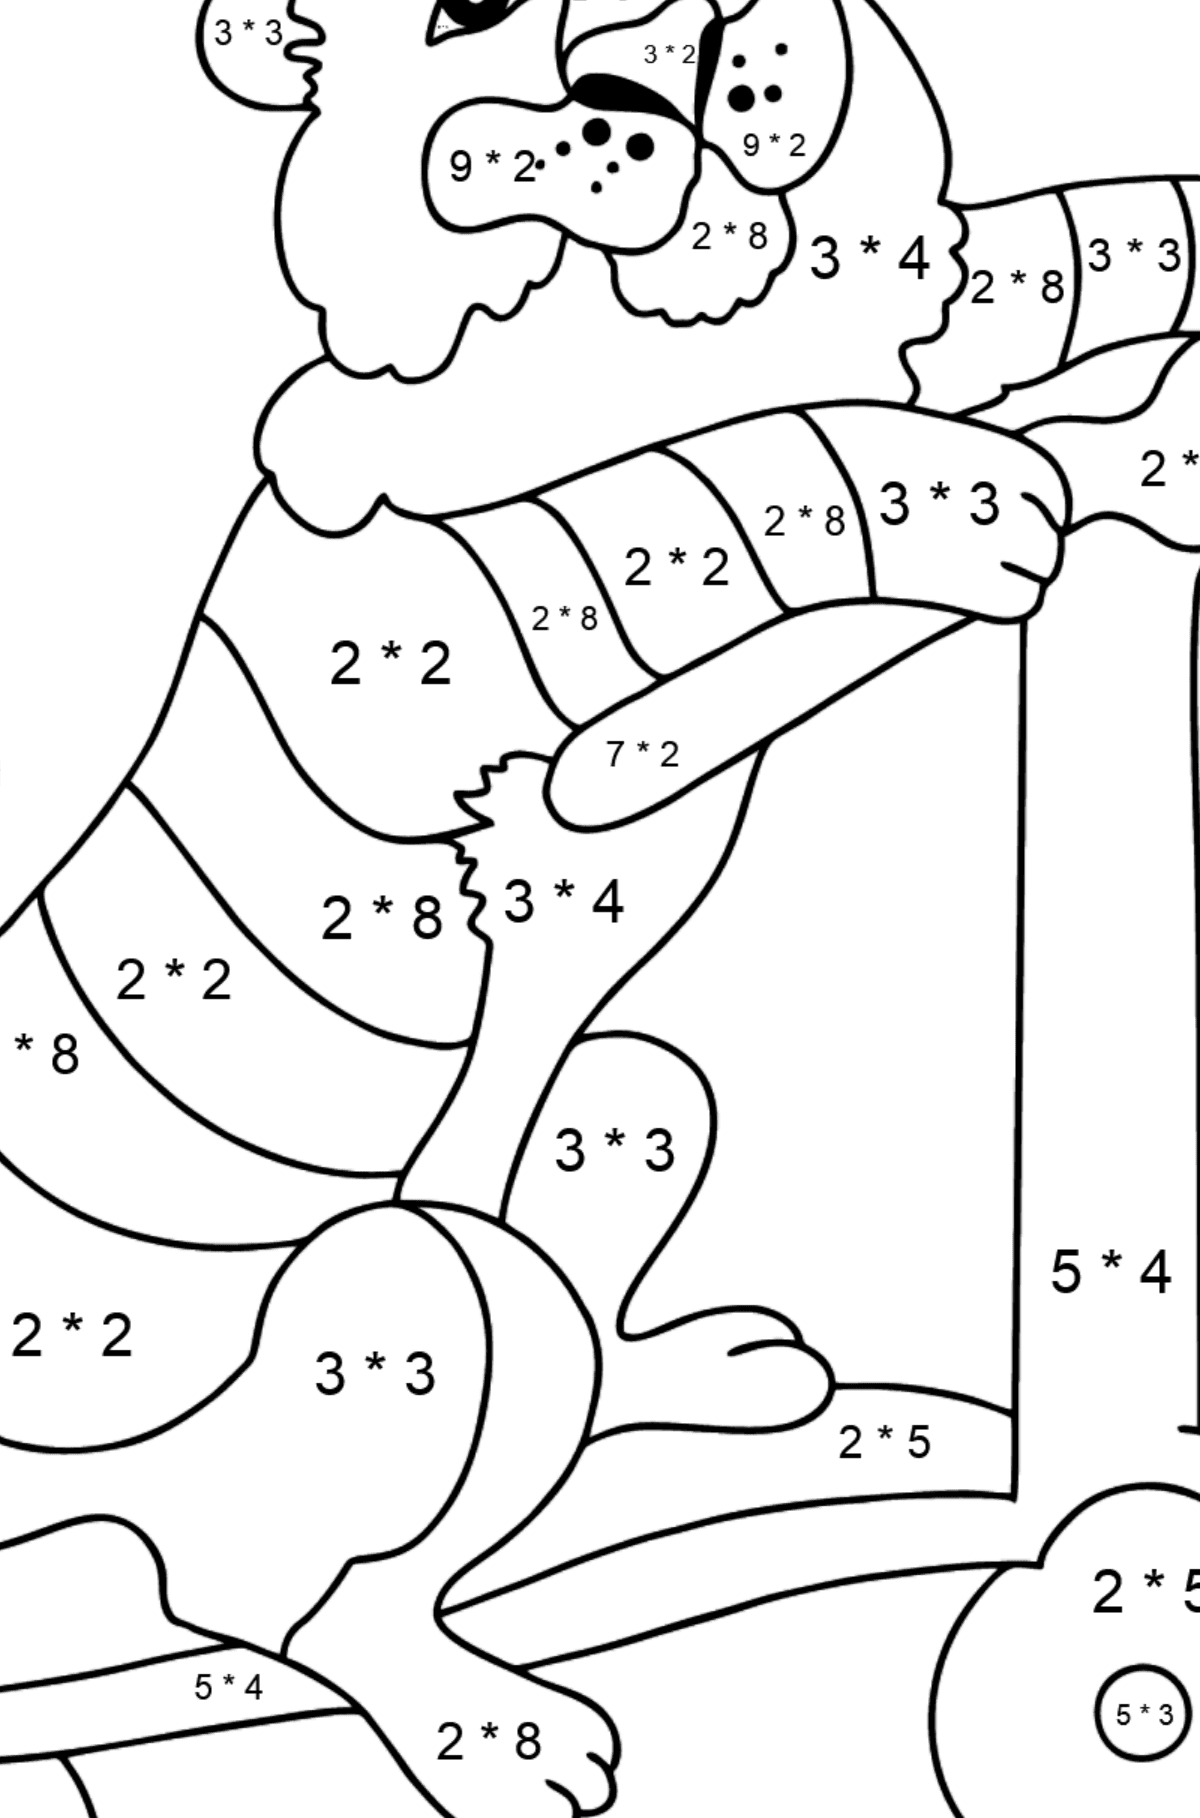 Ein Tiger zum Ausmalen auf einem ausgefallenen Roller - Mathe Ausmalbilder - Multiplikation für Kinder